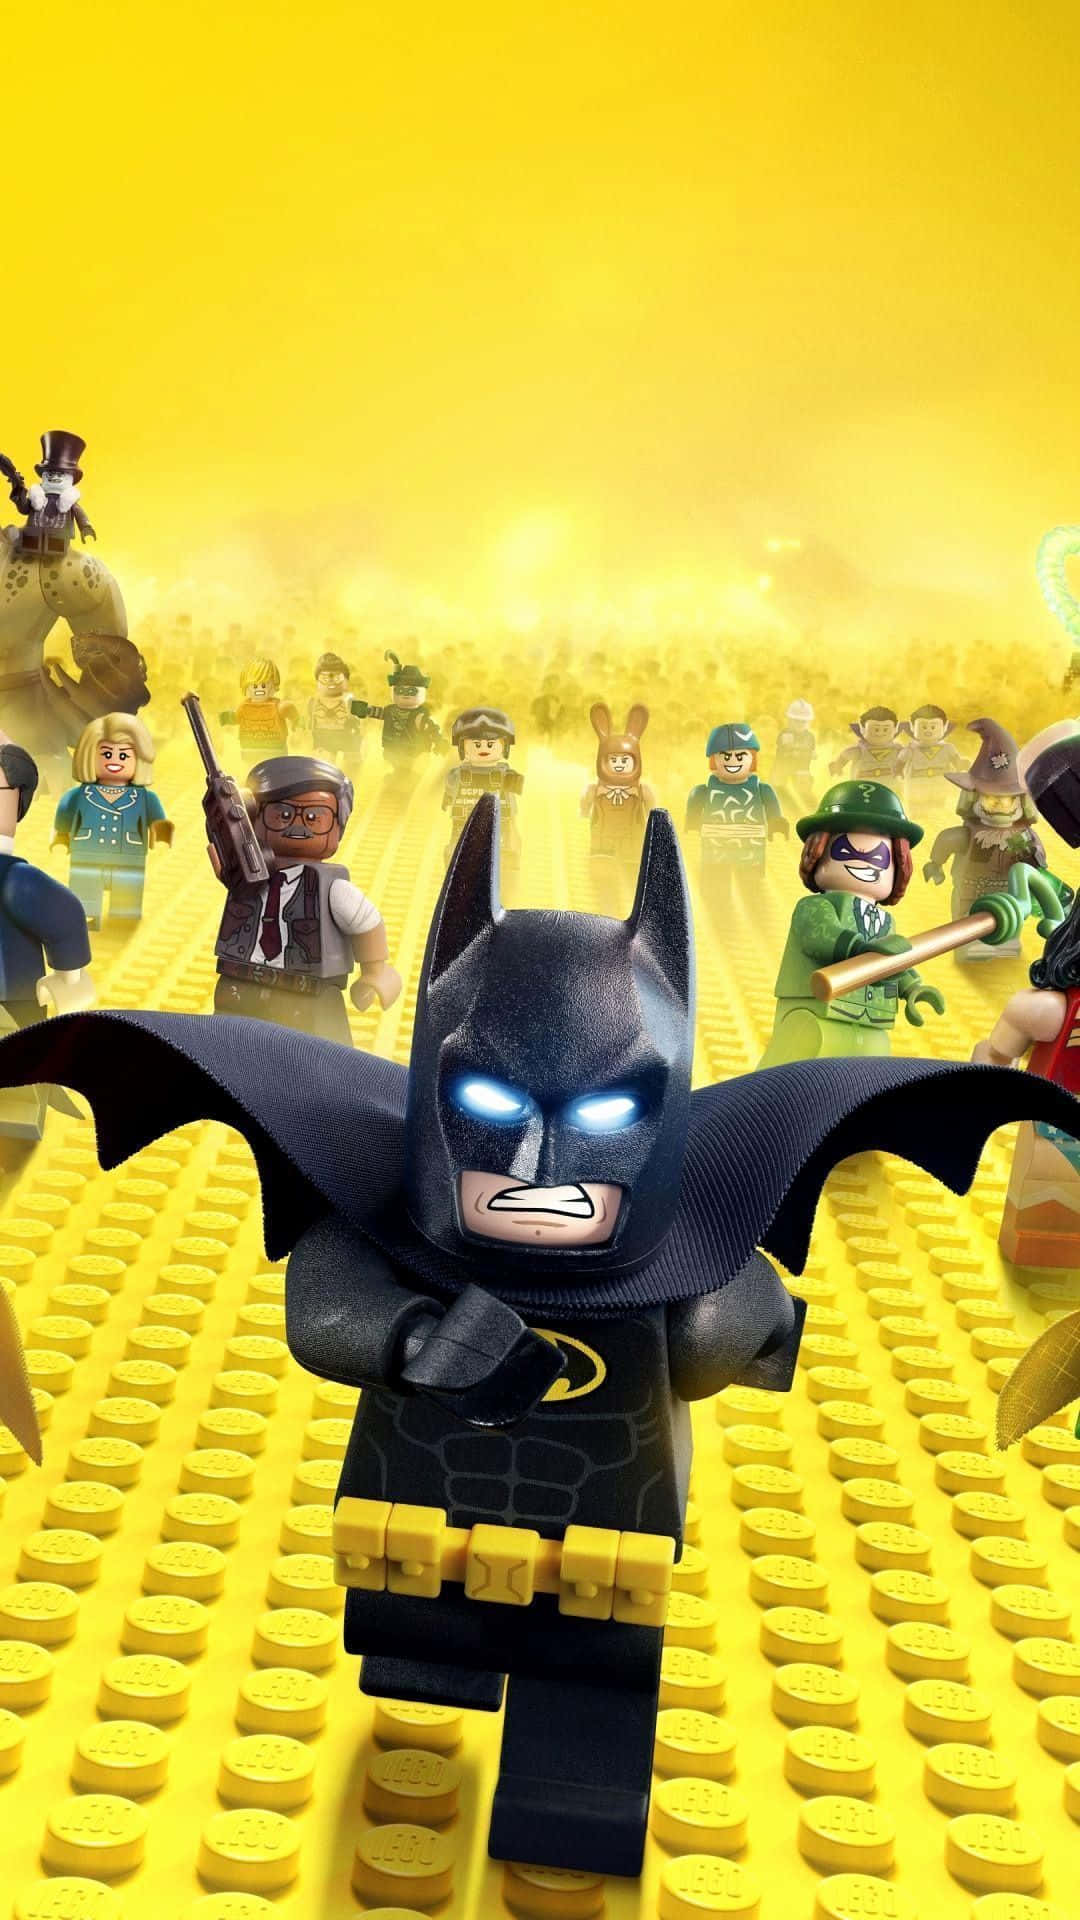 Elpóster De La Película De Lego Batman Fondo de pantalla